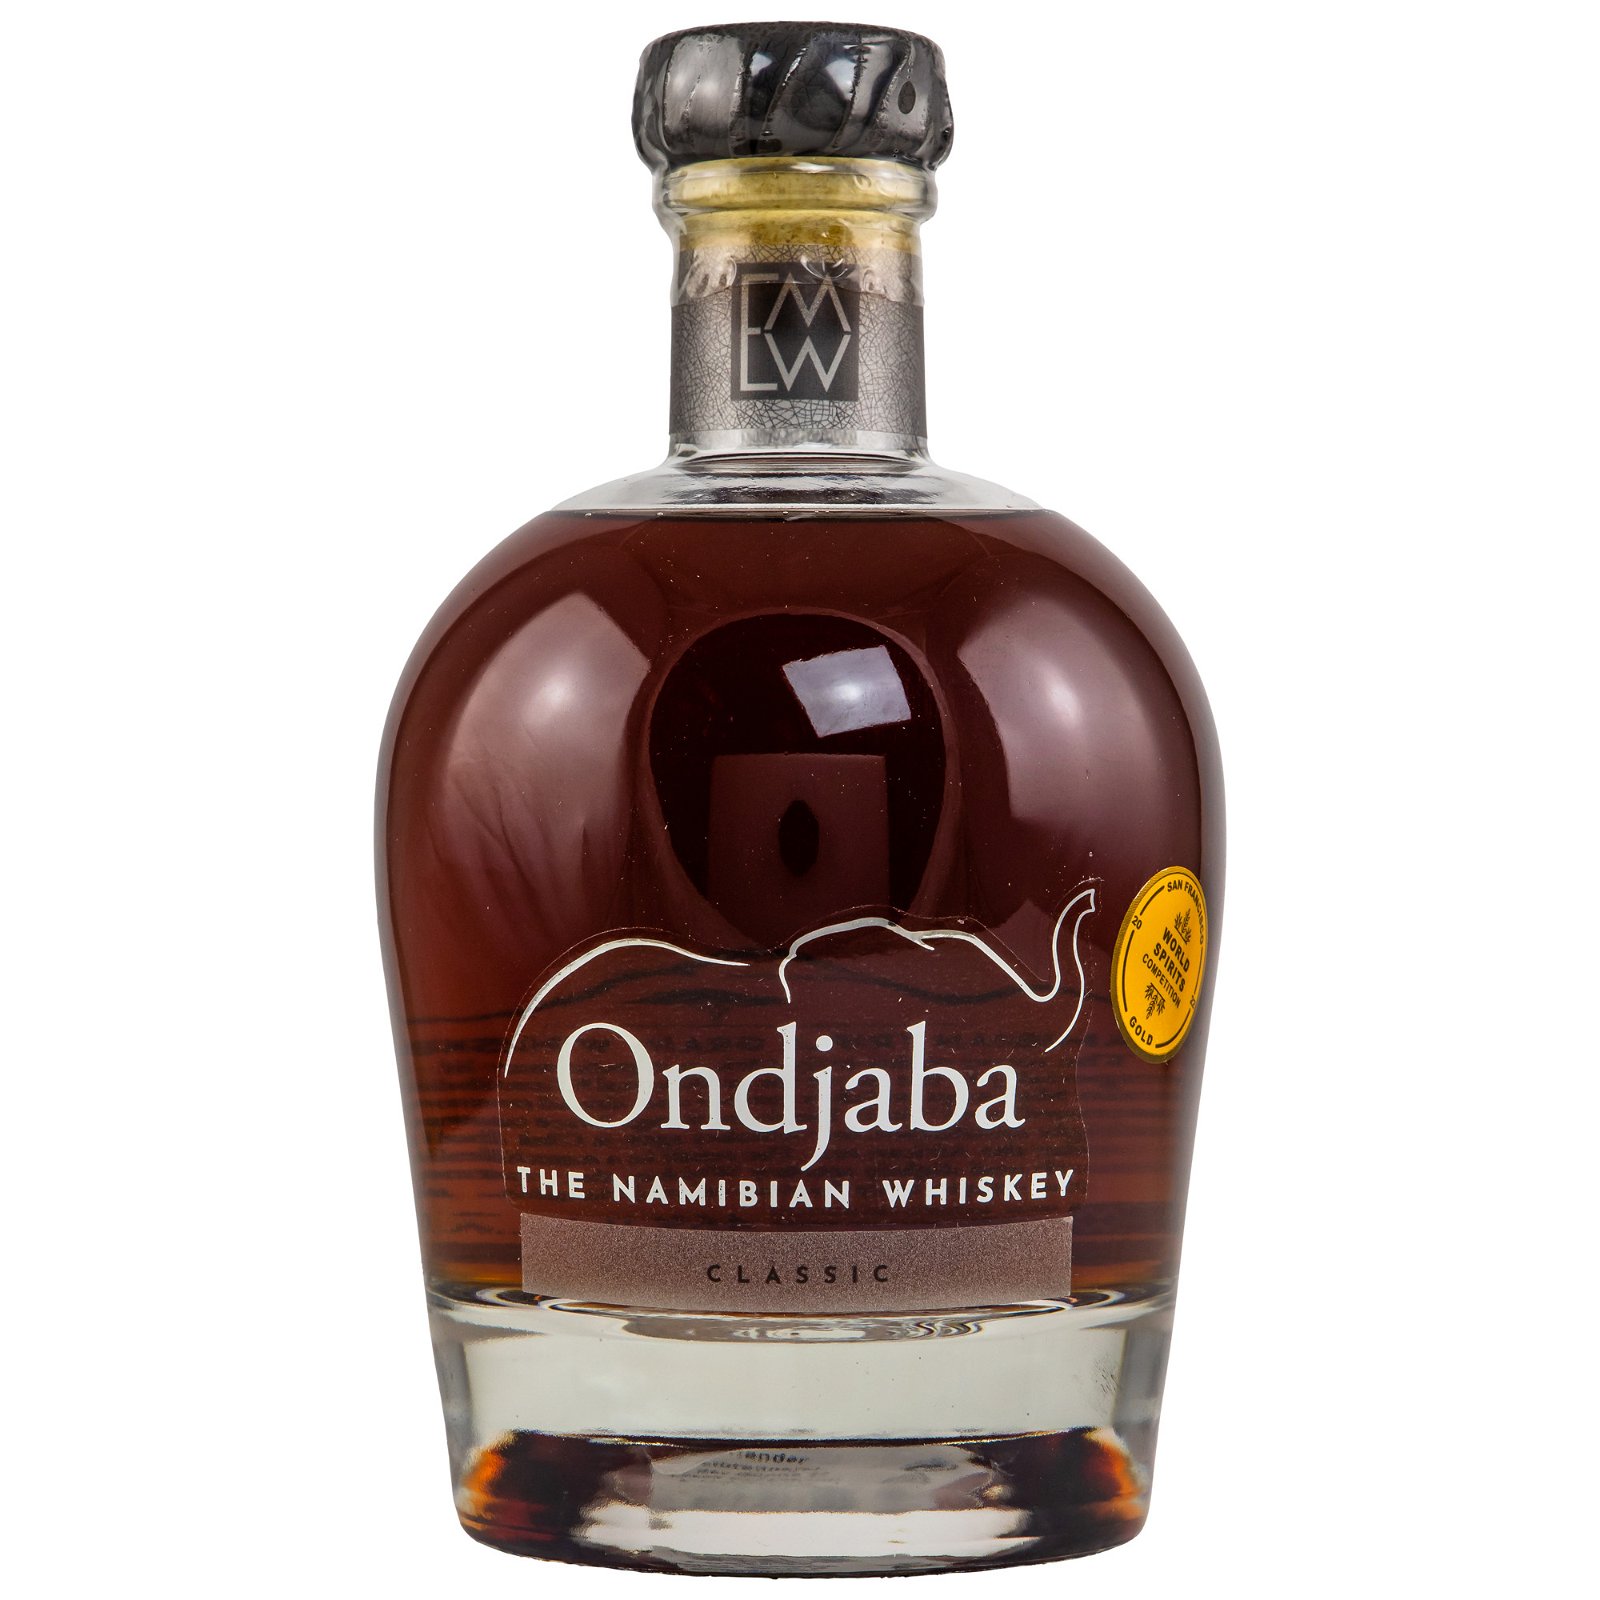 Ondjaba The Namibian Whiskey Classic